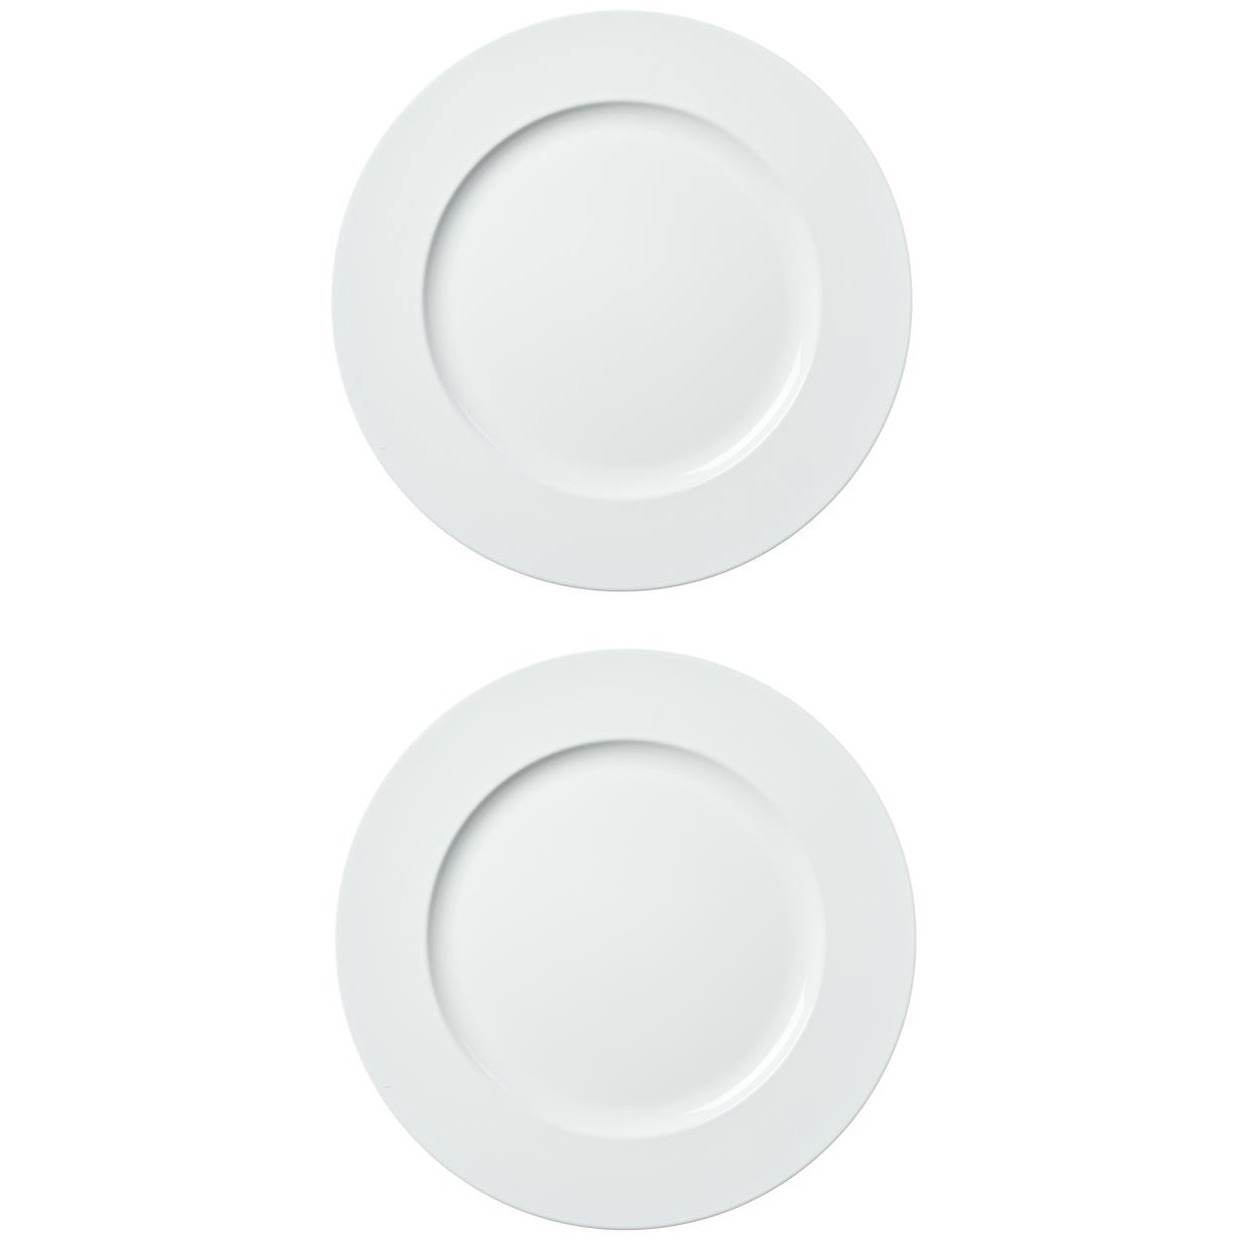 2x stuks diner borden-onderborden wit 33 cm